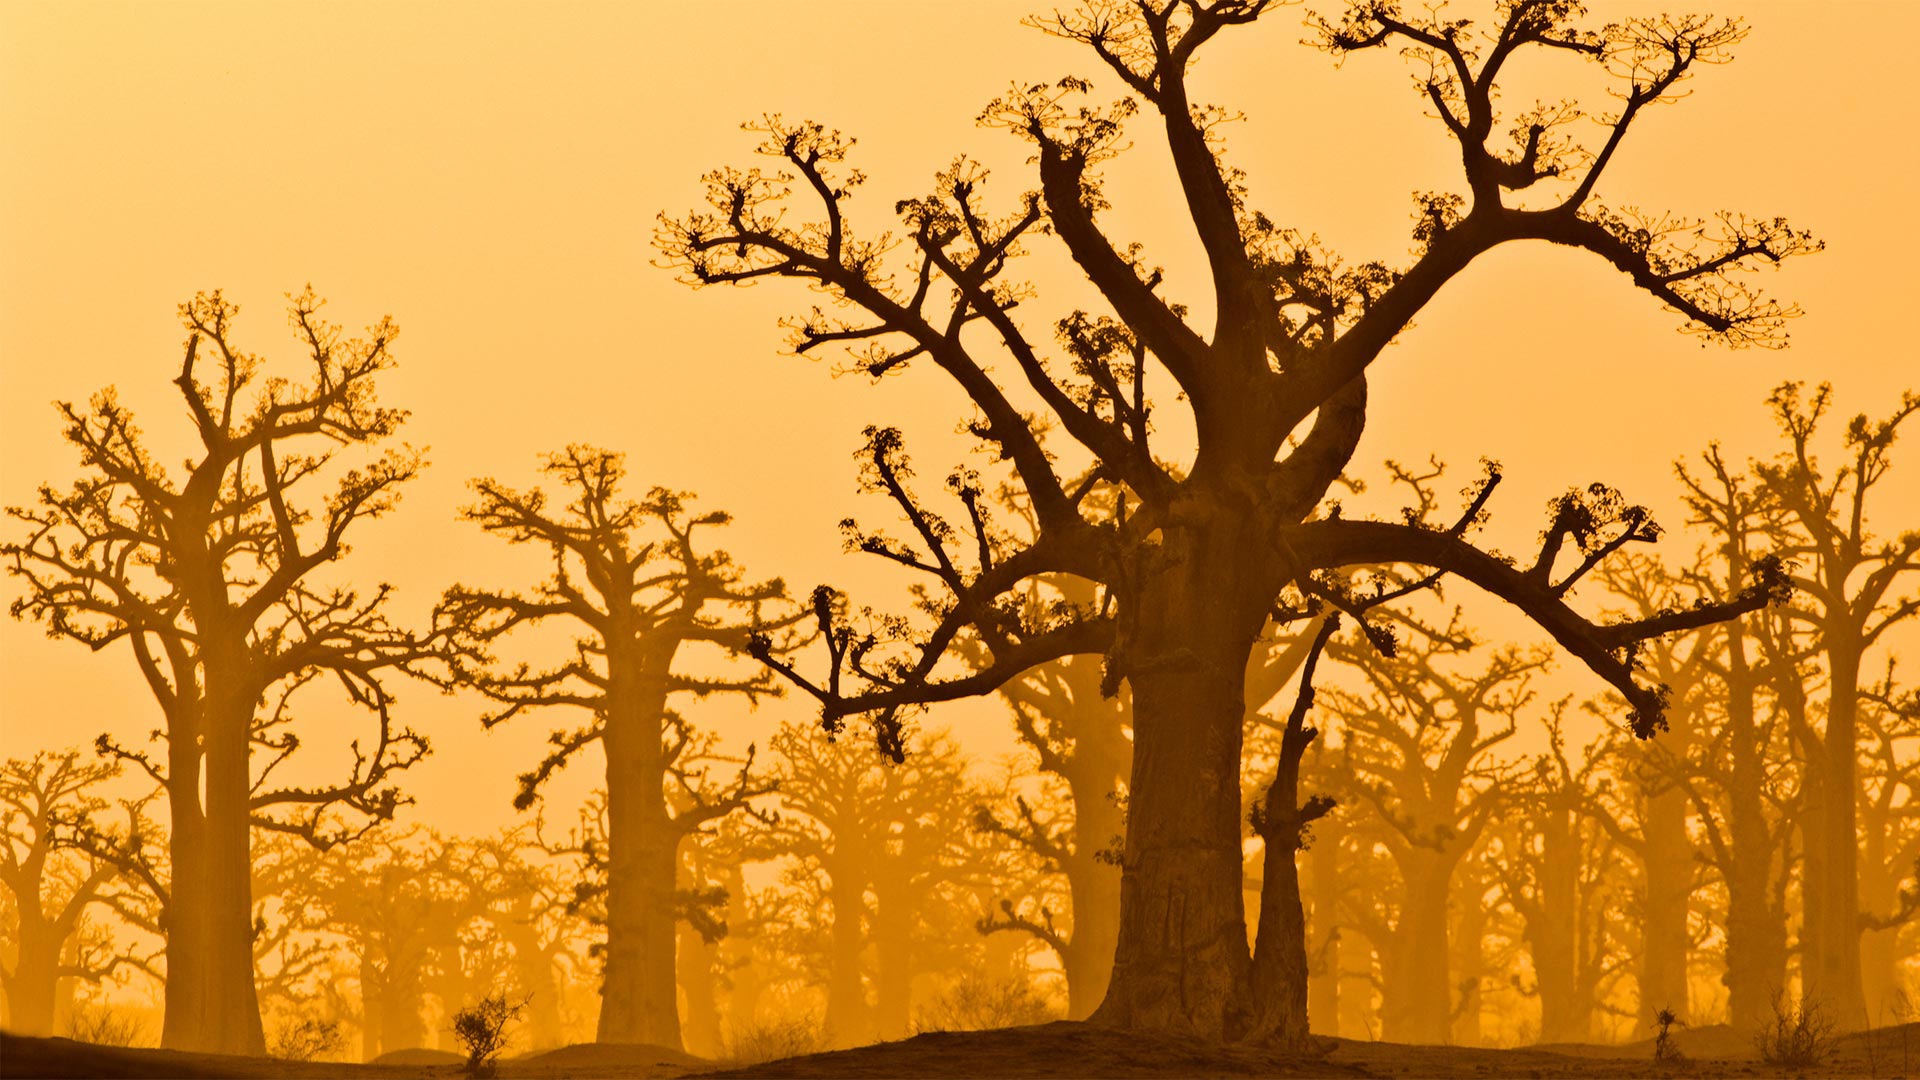 Baobab Grove